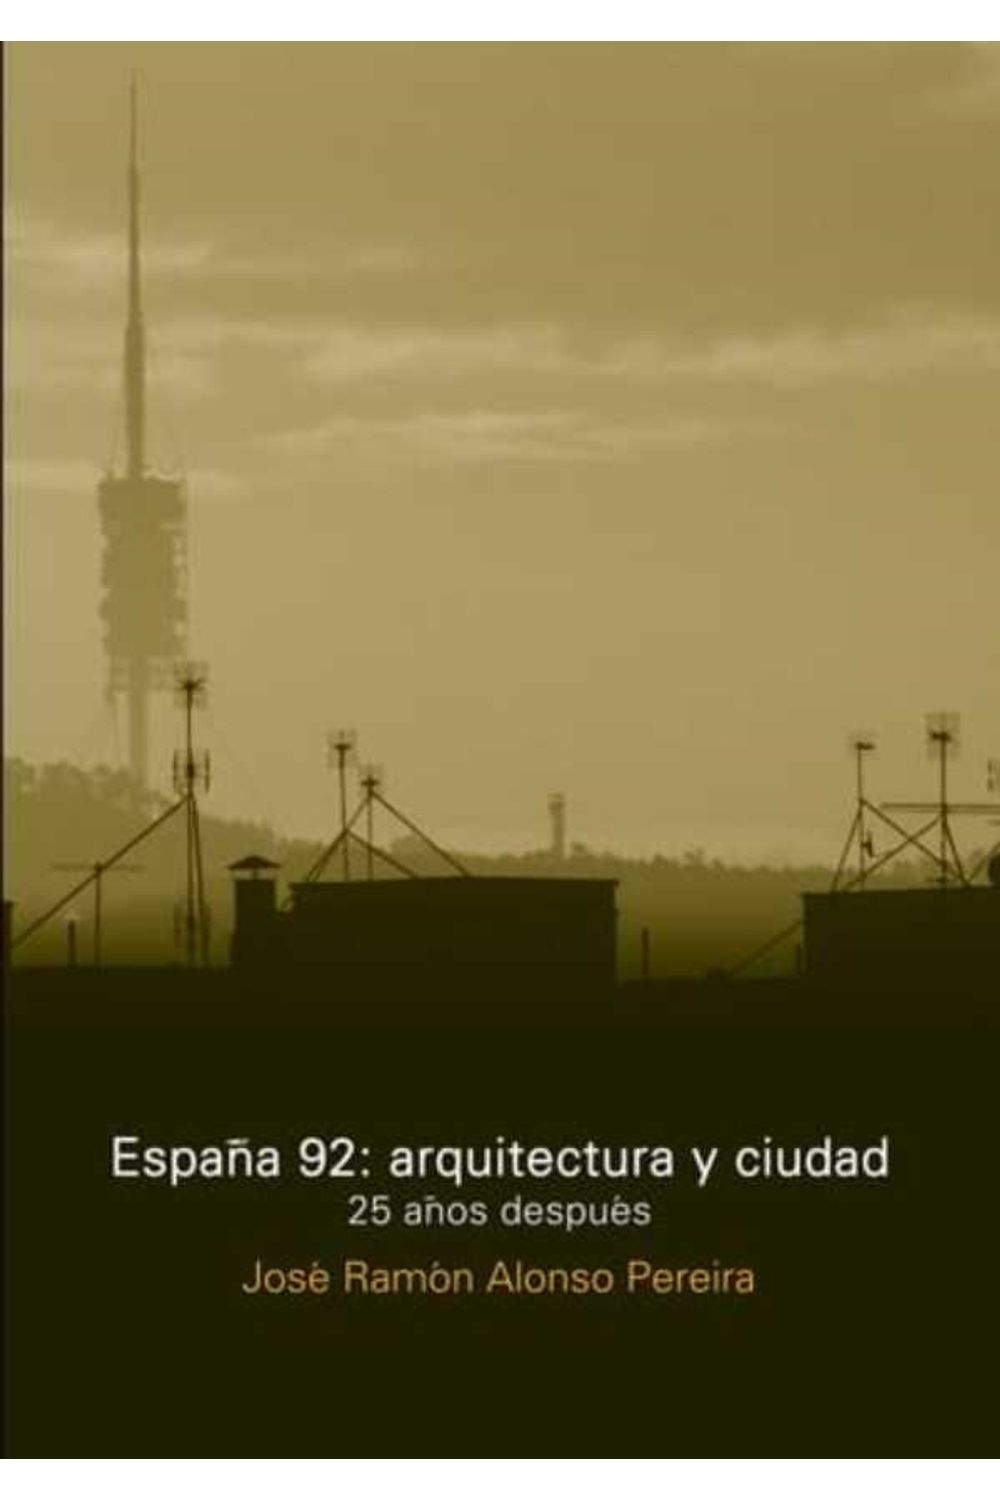 bw-espantildea-92-arquitectura-y-ciudad-nobukodiseo-editorial-9781643601304